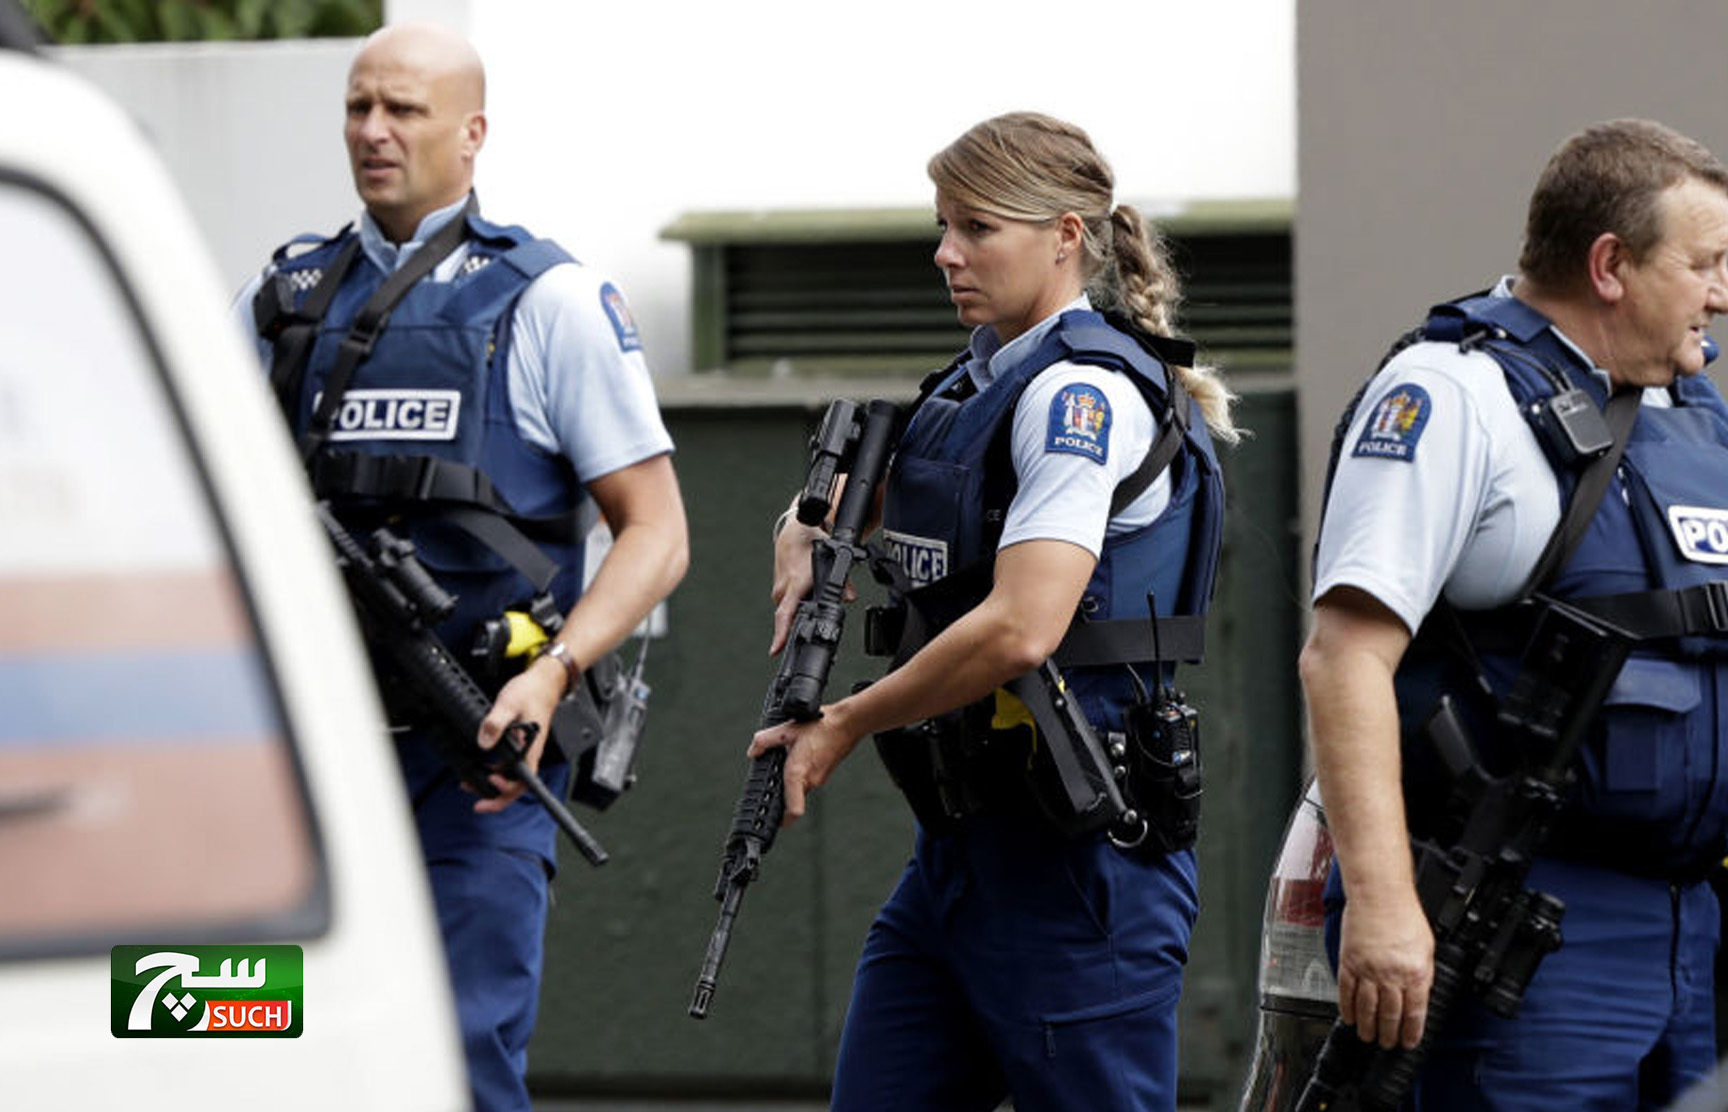 نشر فيديو اعتقال أحد المشتبهين بالهجوم على المسجدين في نيوزيلندا